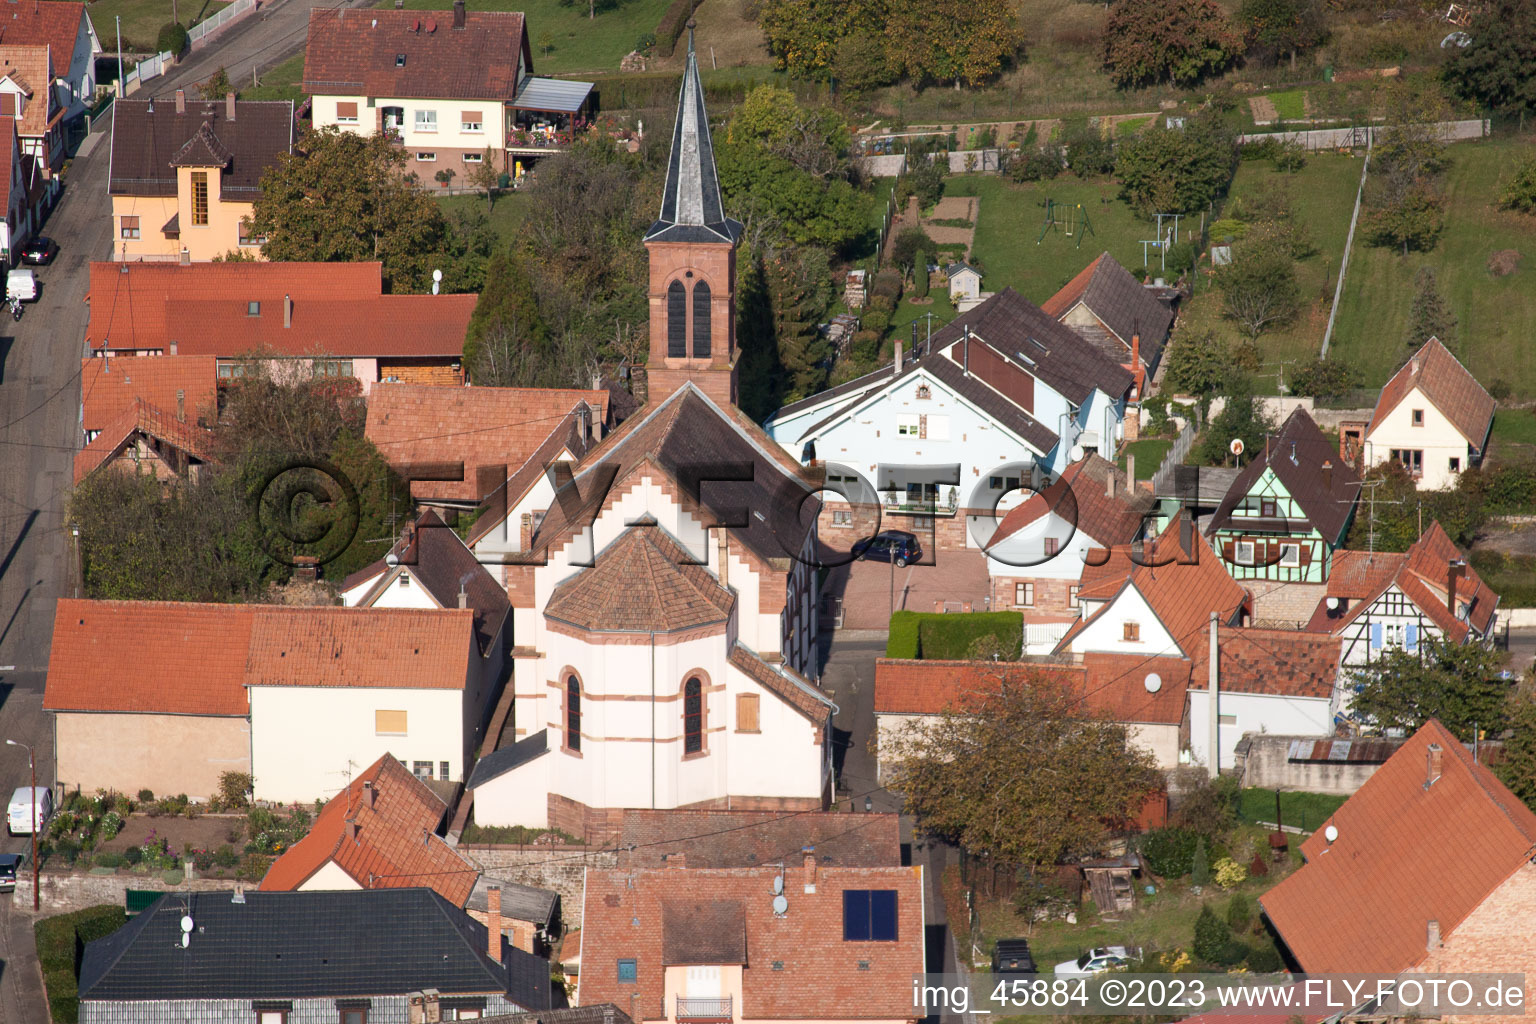 Gœrsdorf im Bundesland Bas-Rhin, Frankreich aus der Drohnenperspektive